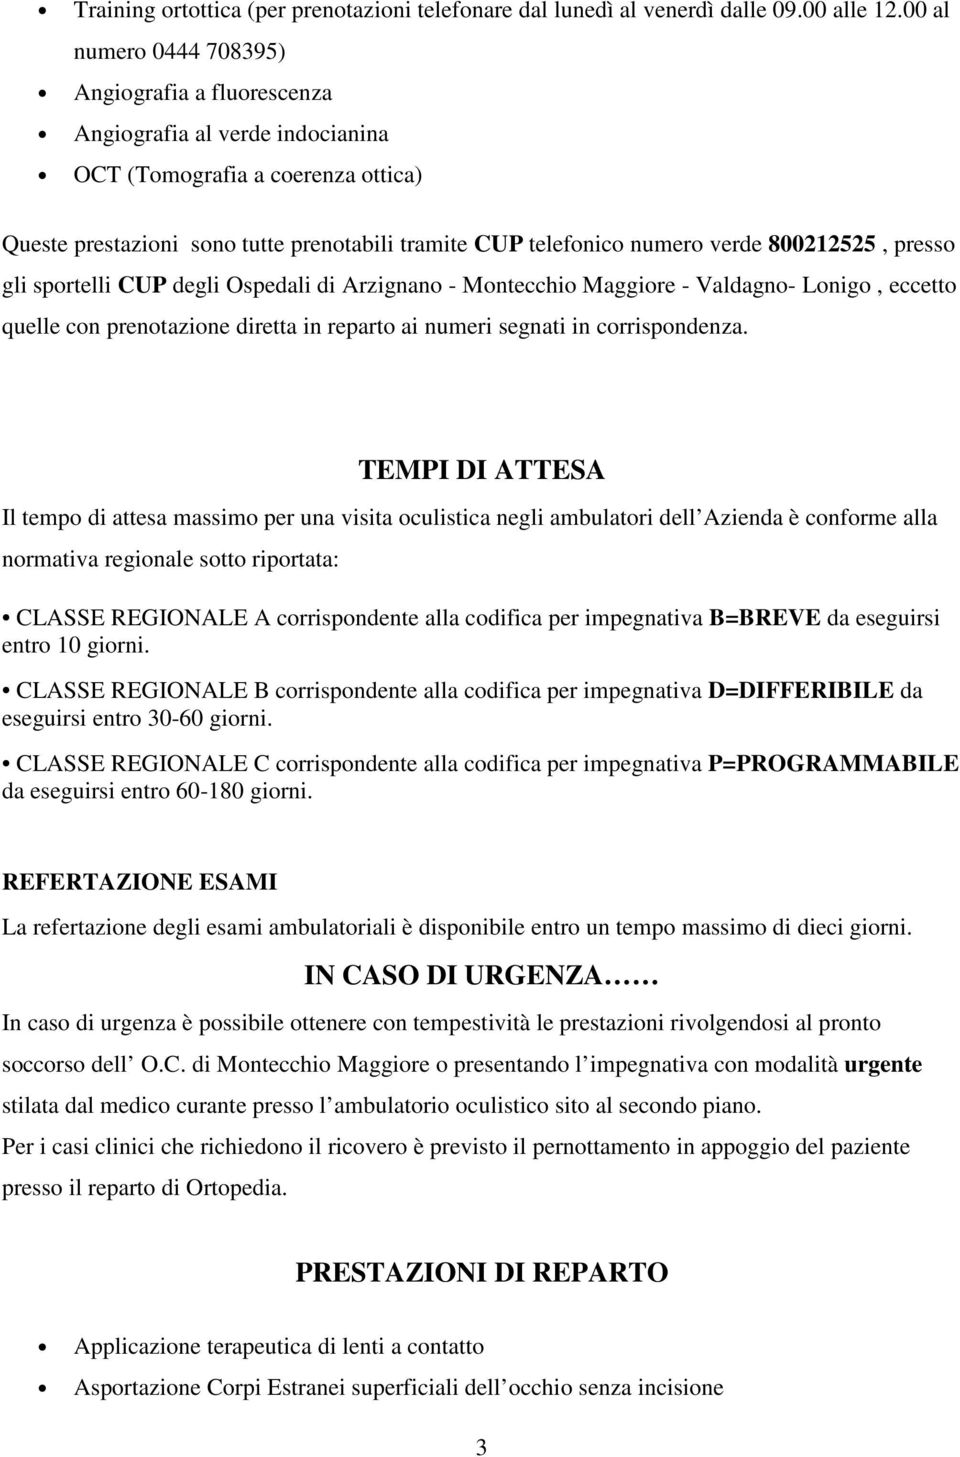 800212525, presso gli sportelli CUP degli Ospedali di Arzignano - Montecchio Maggiore - Valdagno- Lonigo, eccetto quelle con prenotazione diretta in reparto ai numeri segnati in corrispondenza.